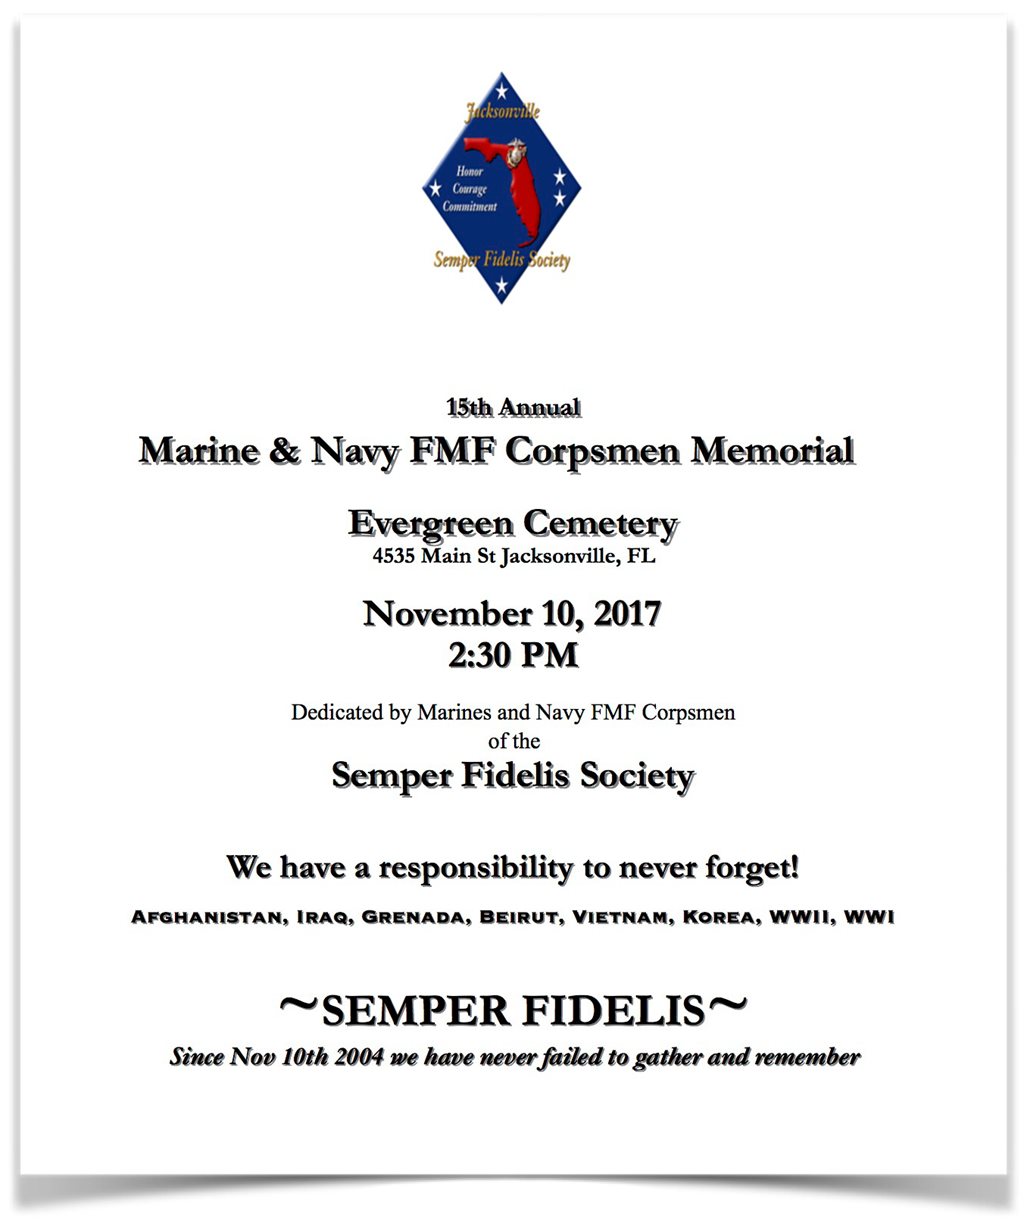 Marine & Navy FMF Corpsmen Memorial flyer